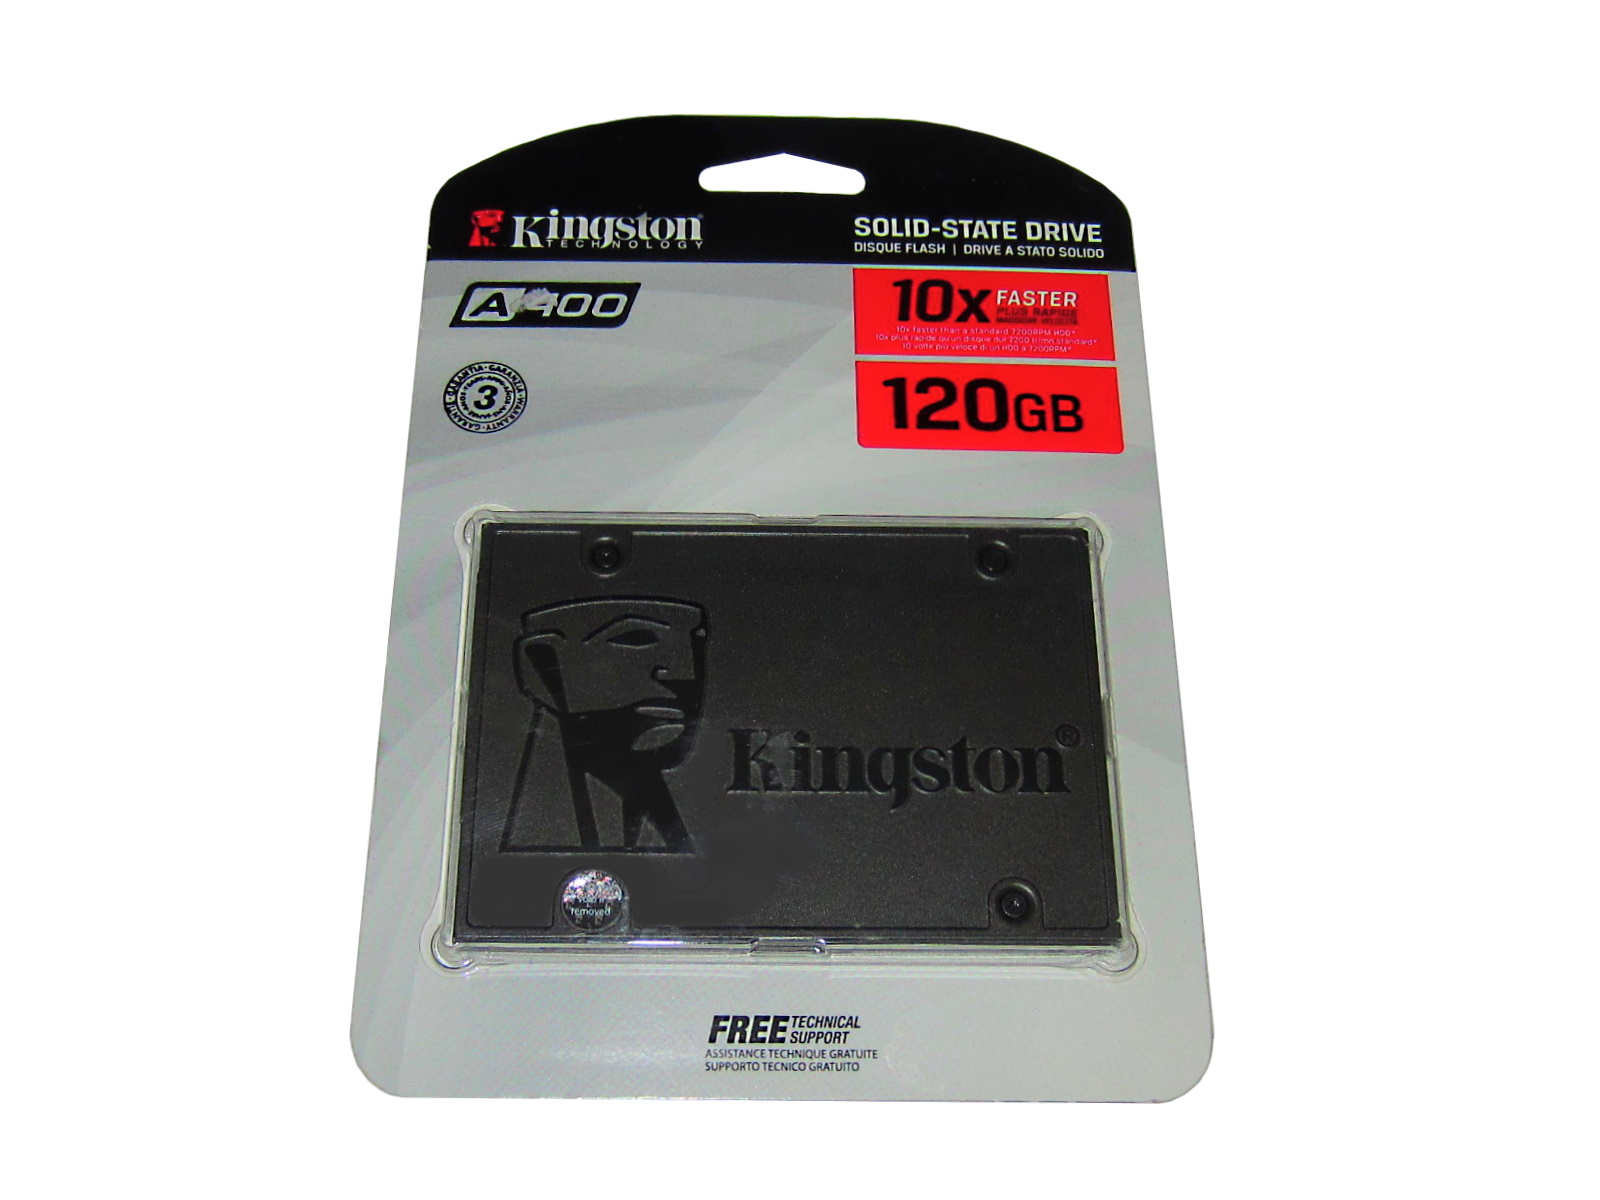 SSD KINGSTON SA400 120GB SATA 3 2.5